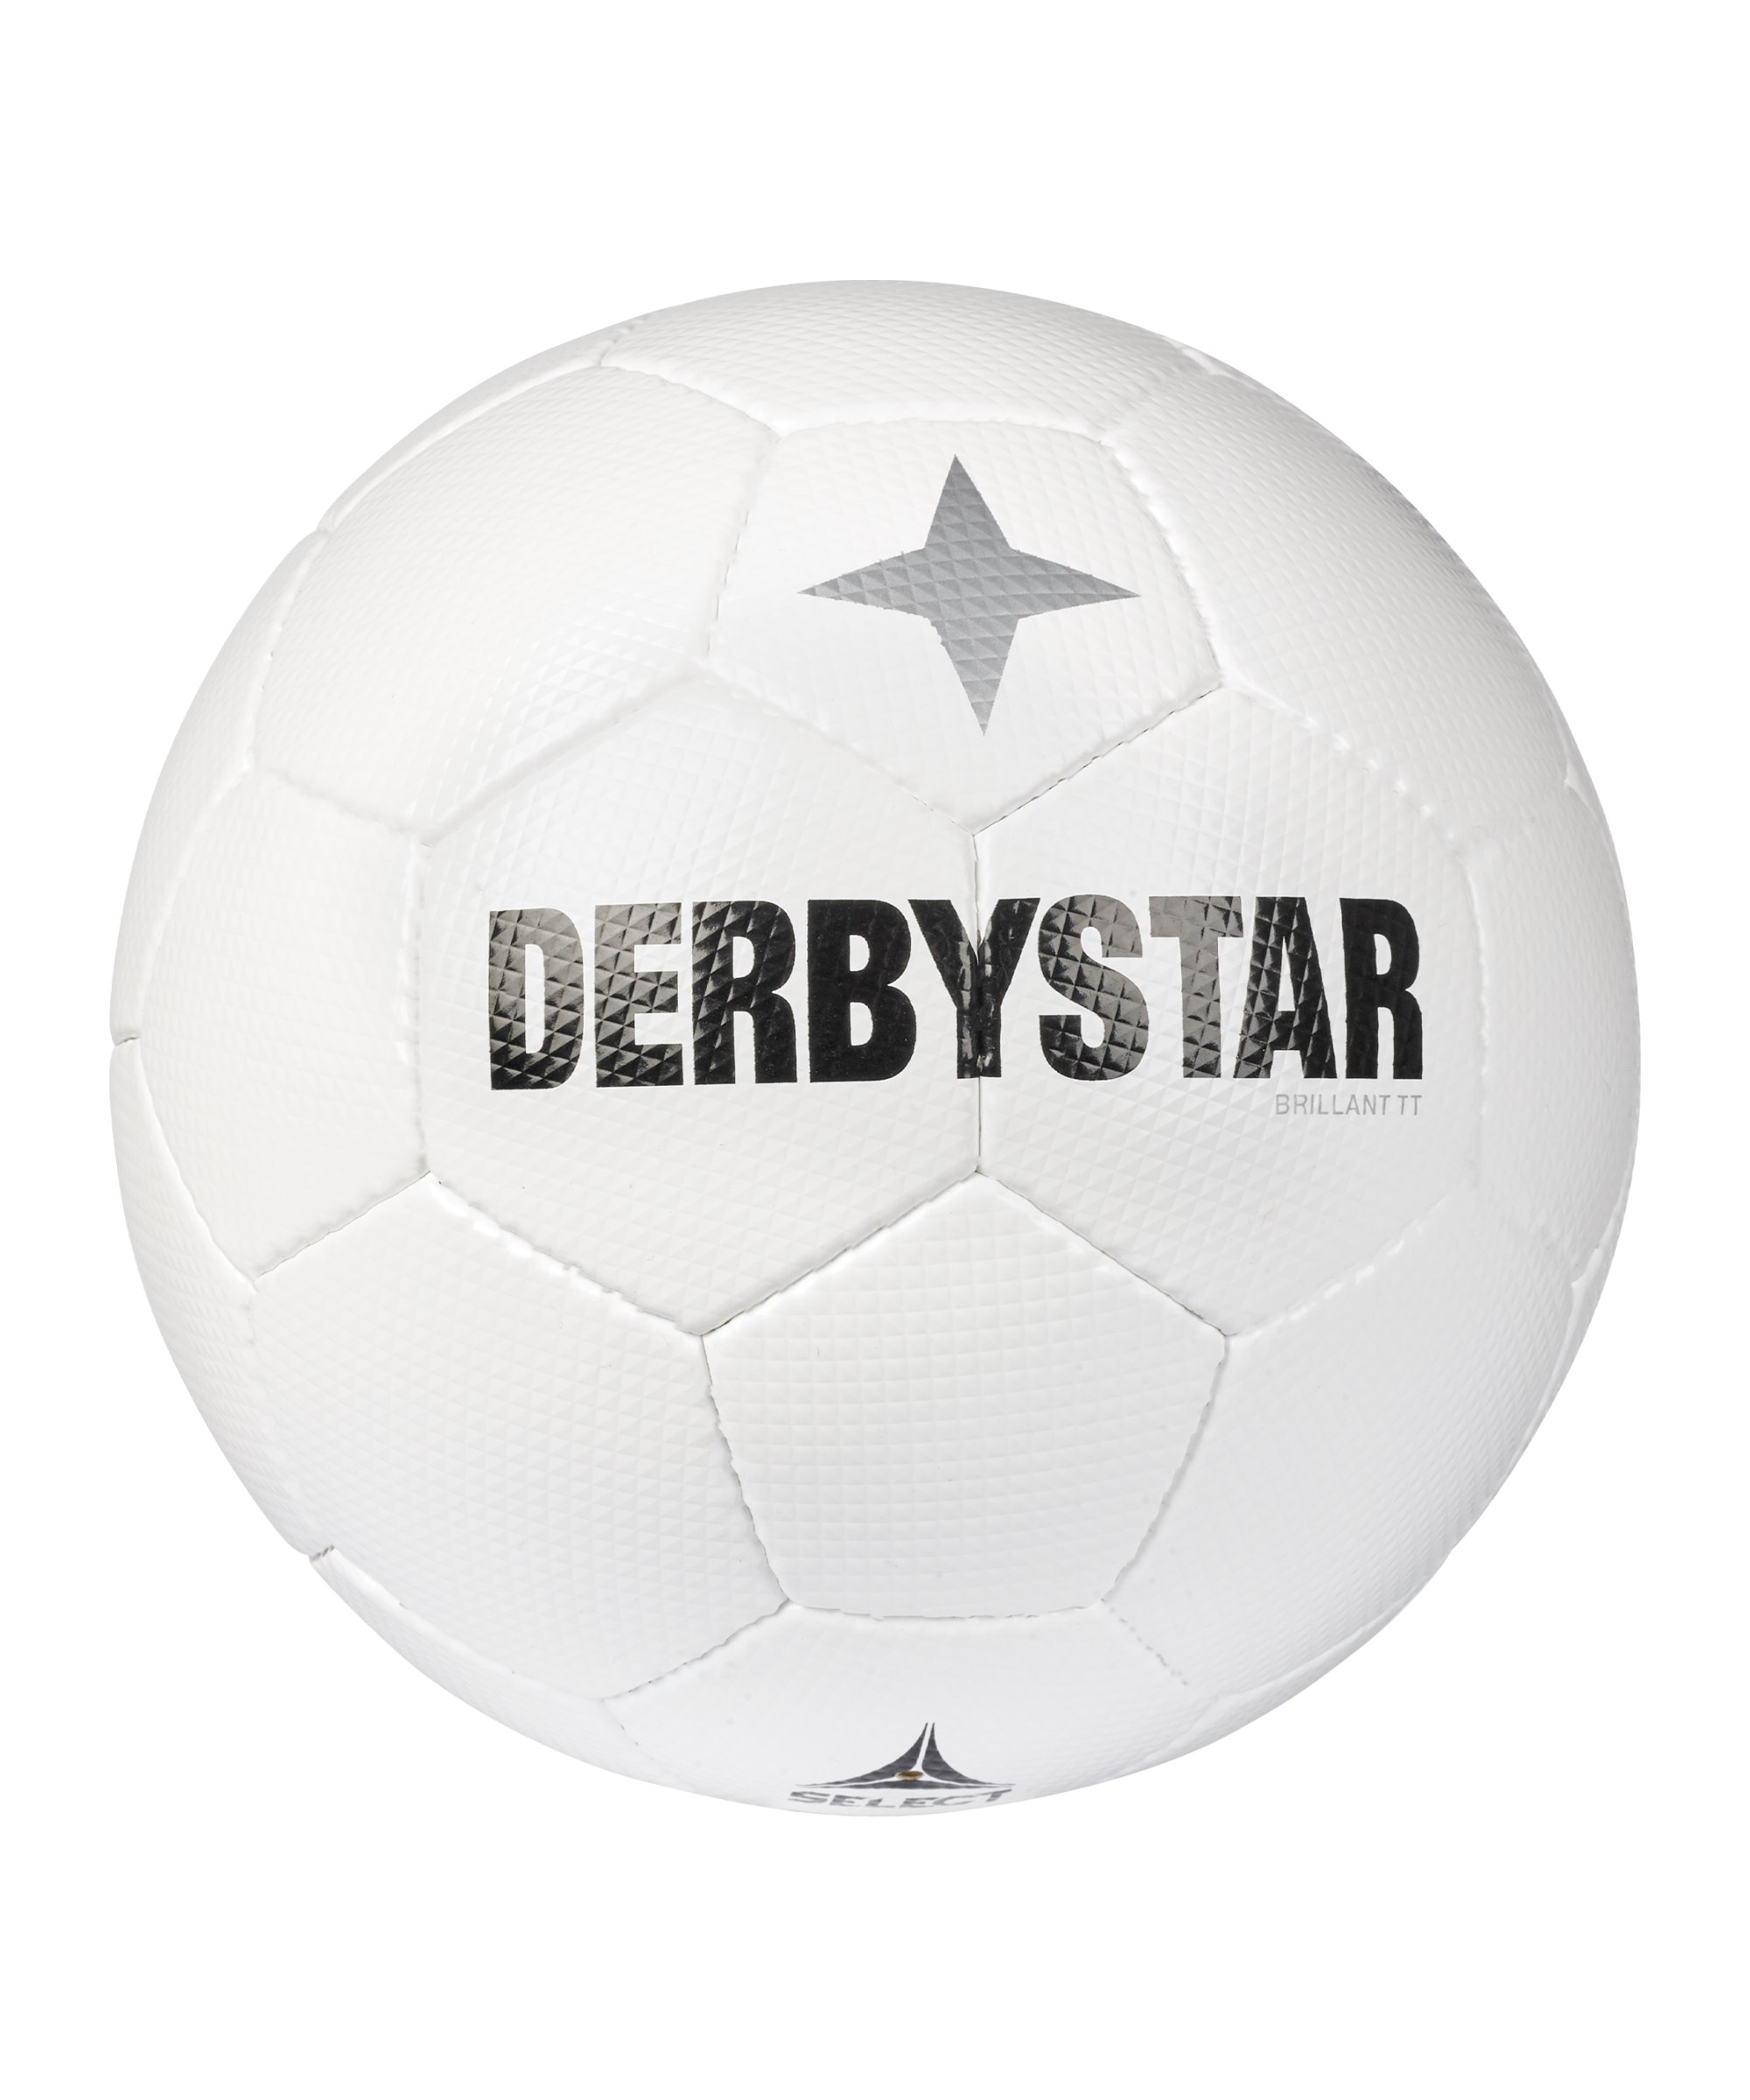 Derbystar Brilliant TT Classic v22 Trainingsball F100 - weiss